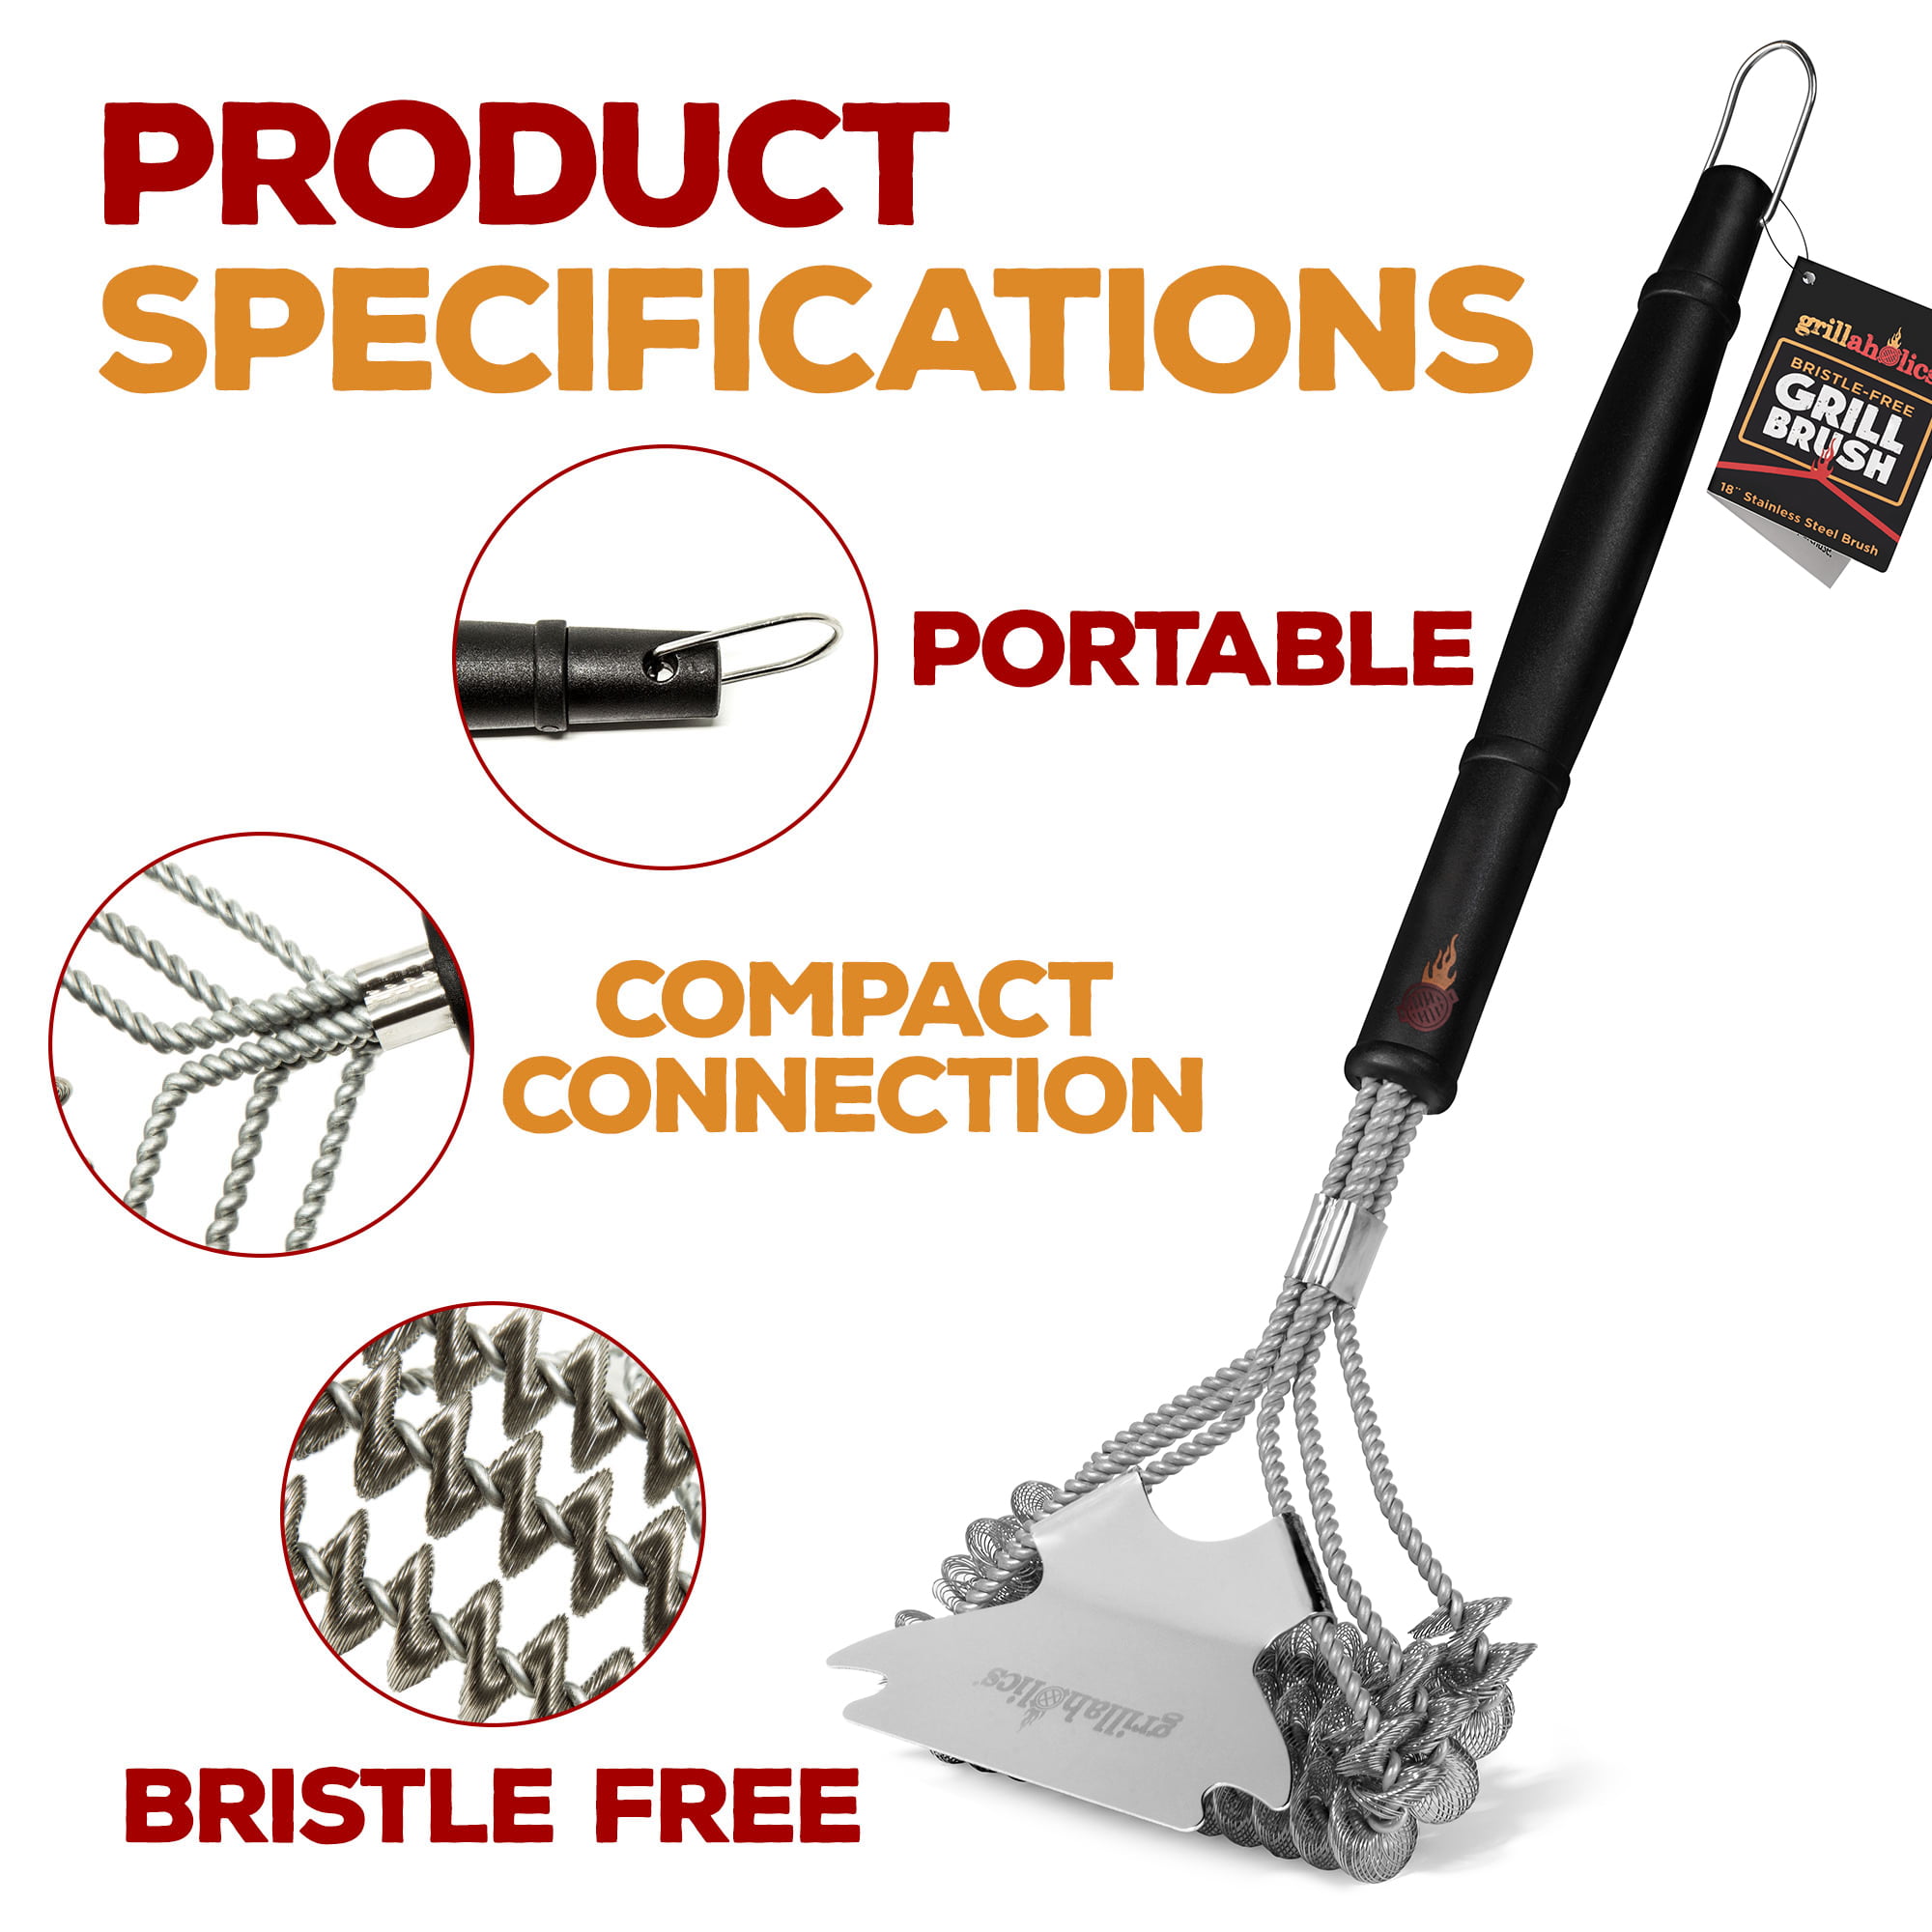 Bristle-free Grill Brush and Scraper – GiveaGiftstore